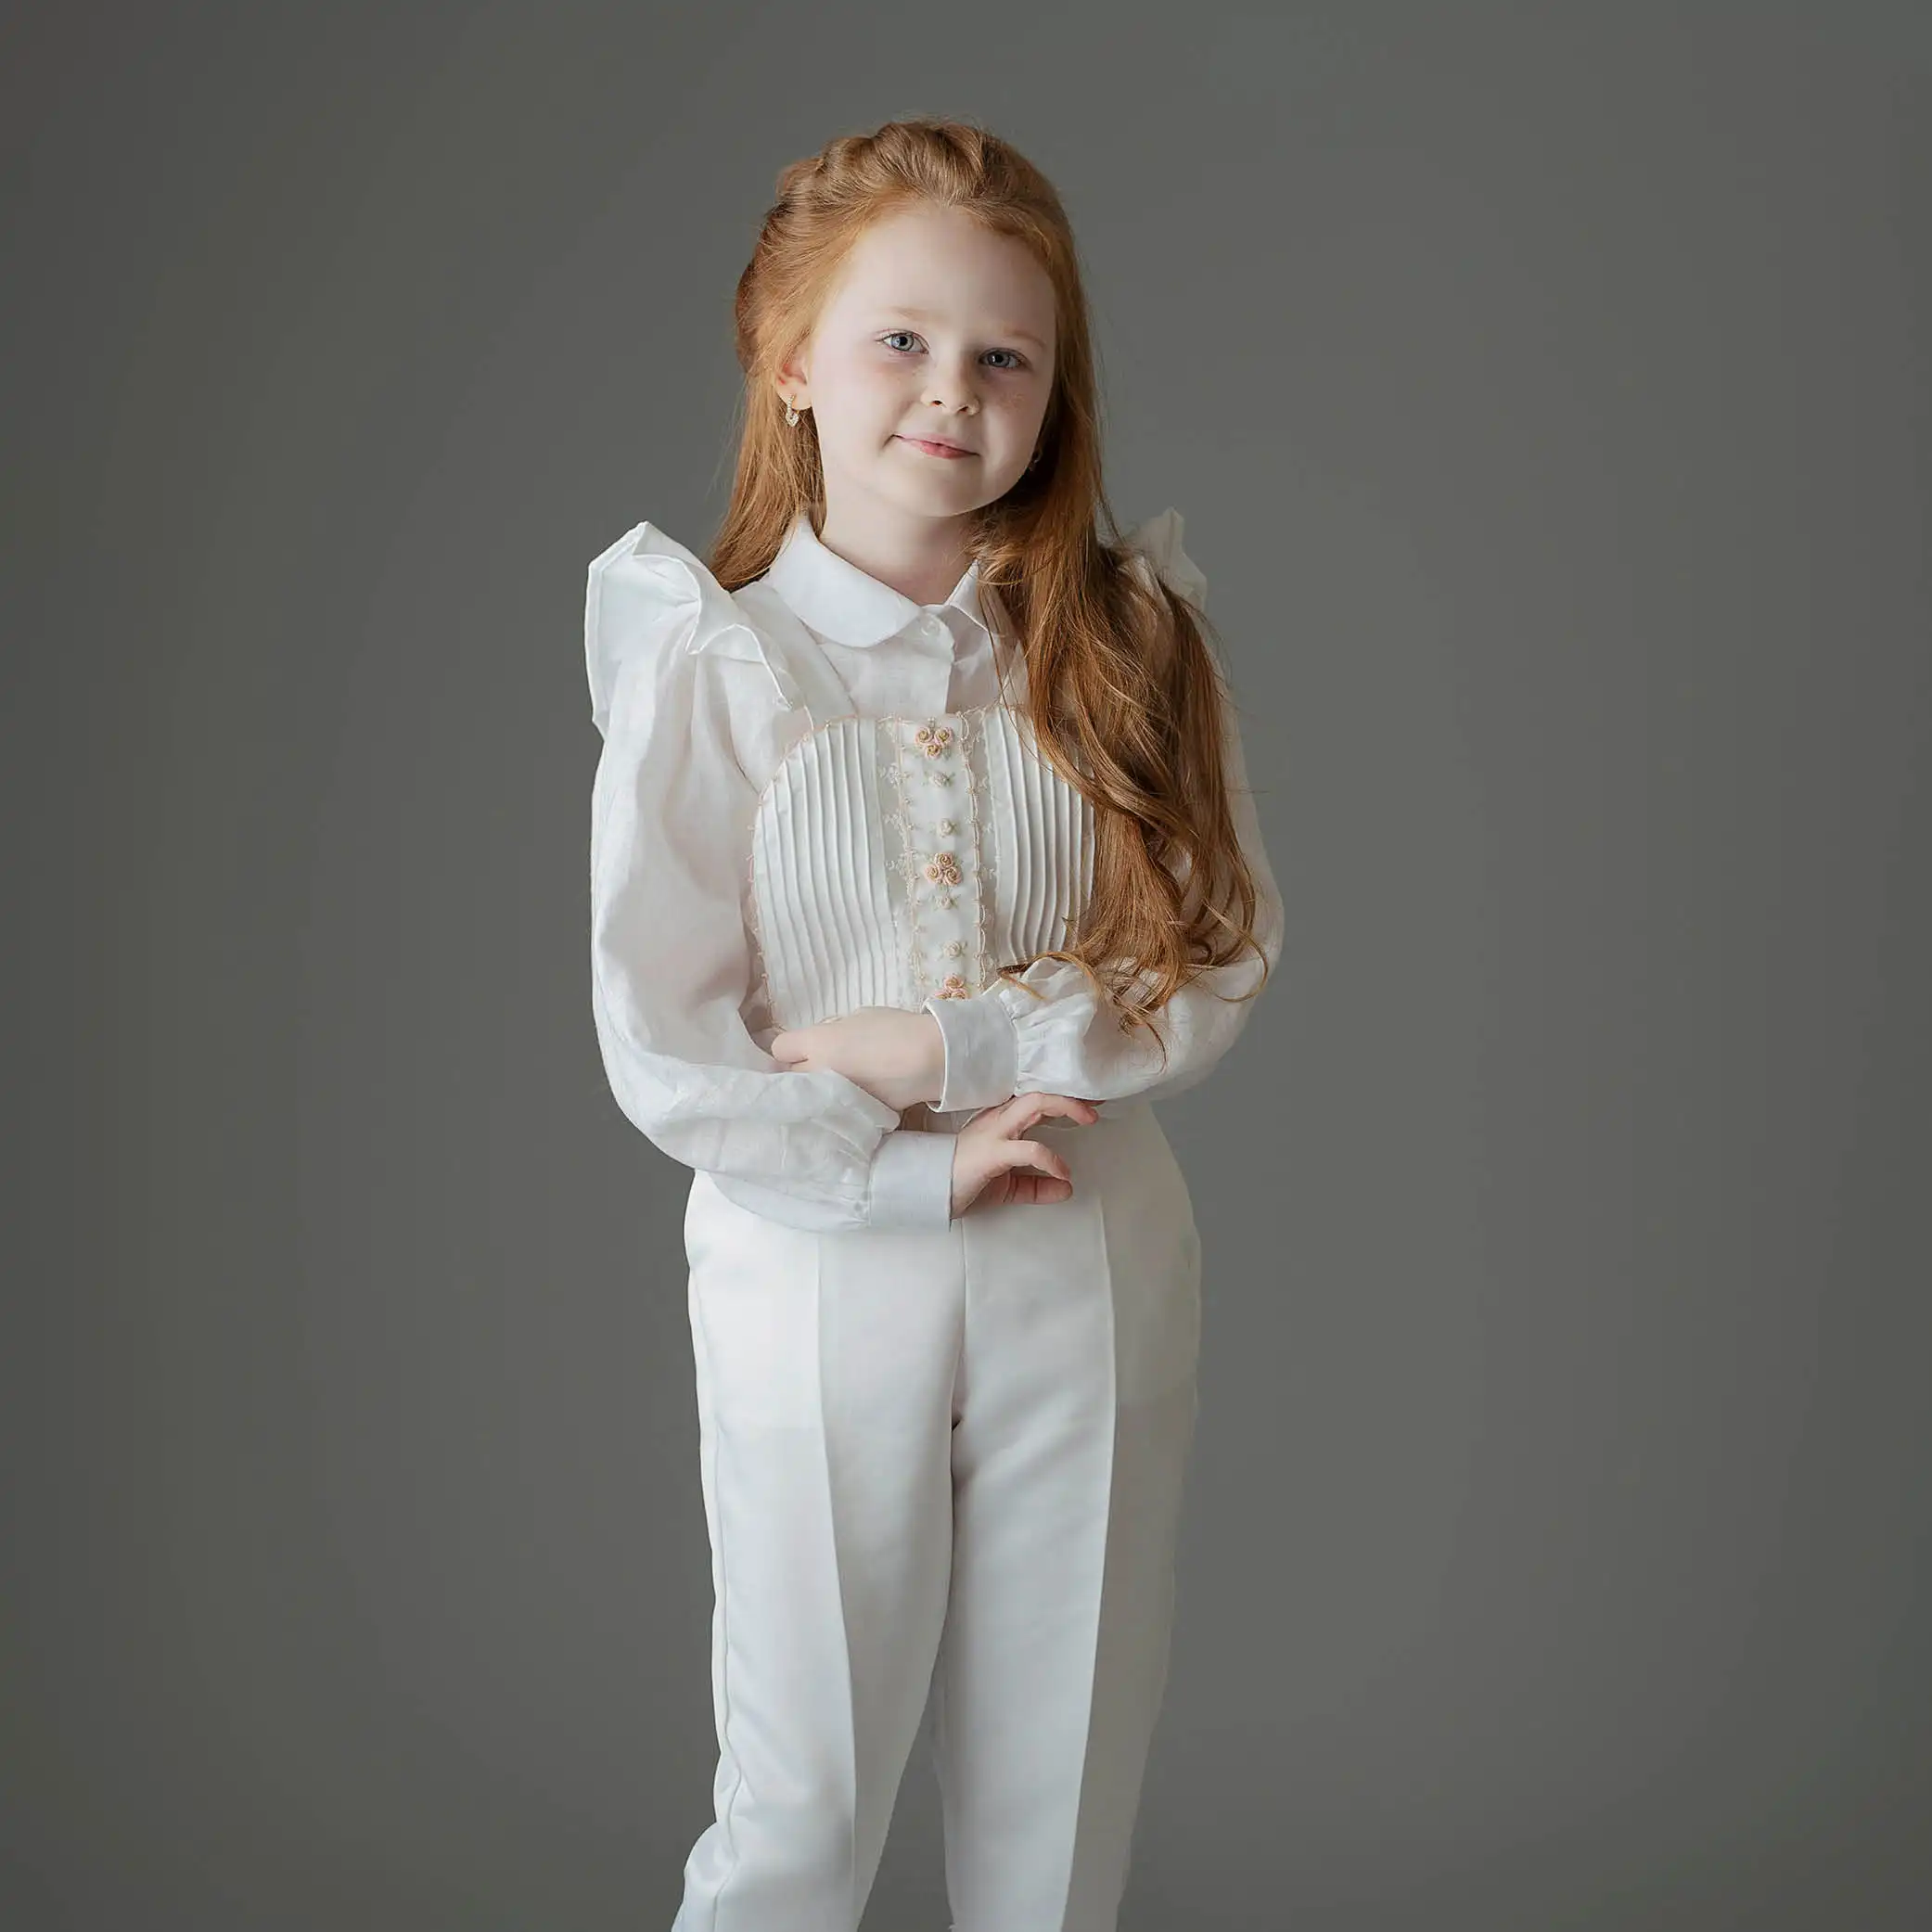 도매 coverl 소녀 의류 아이 착용 구슬 자수 면 패션 긴 셔츠 흰색 바지 소녀 옷 세트 2 조각